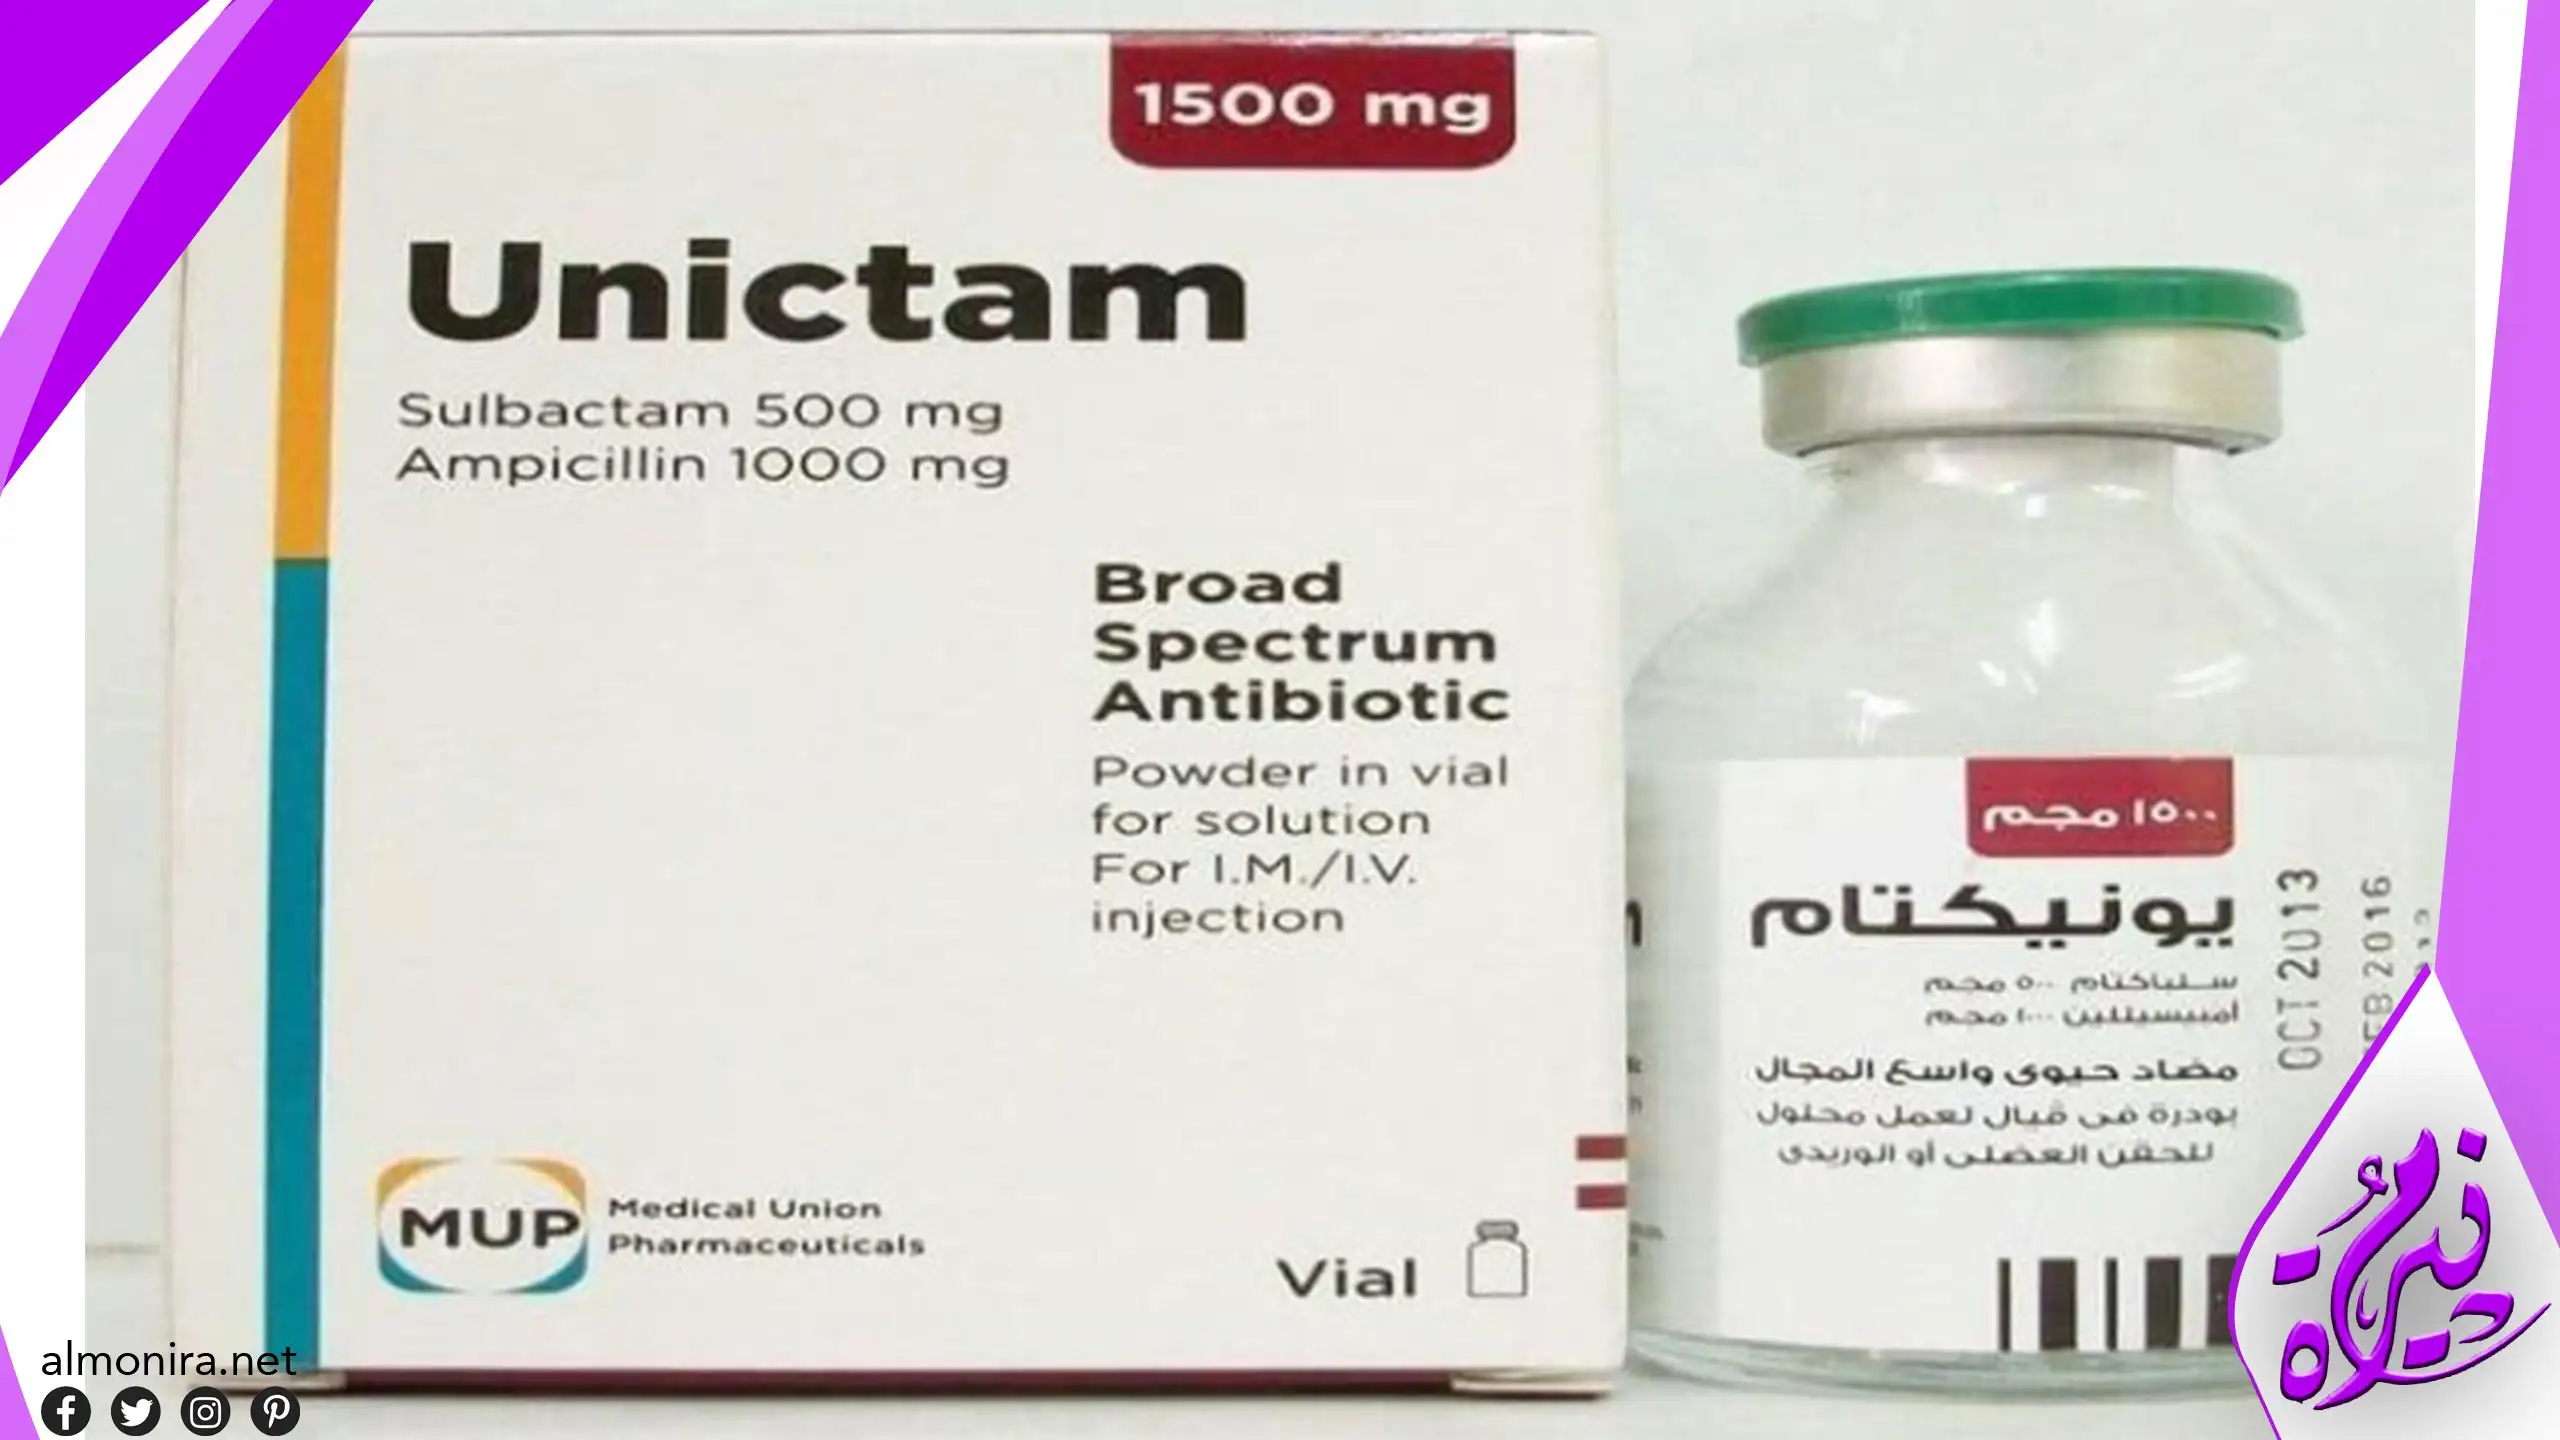 تجربتي مع دواء يونيكتام Unictam وطرق الاستخدام والاعراض الجانبية